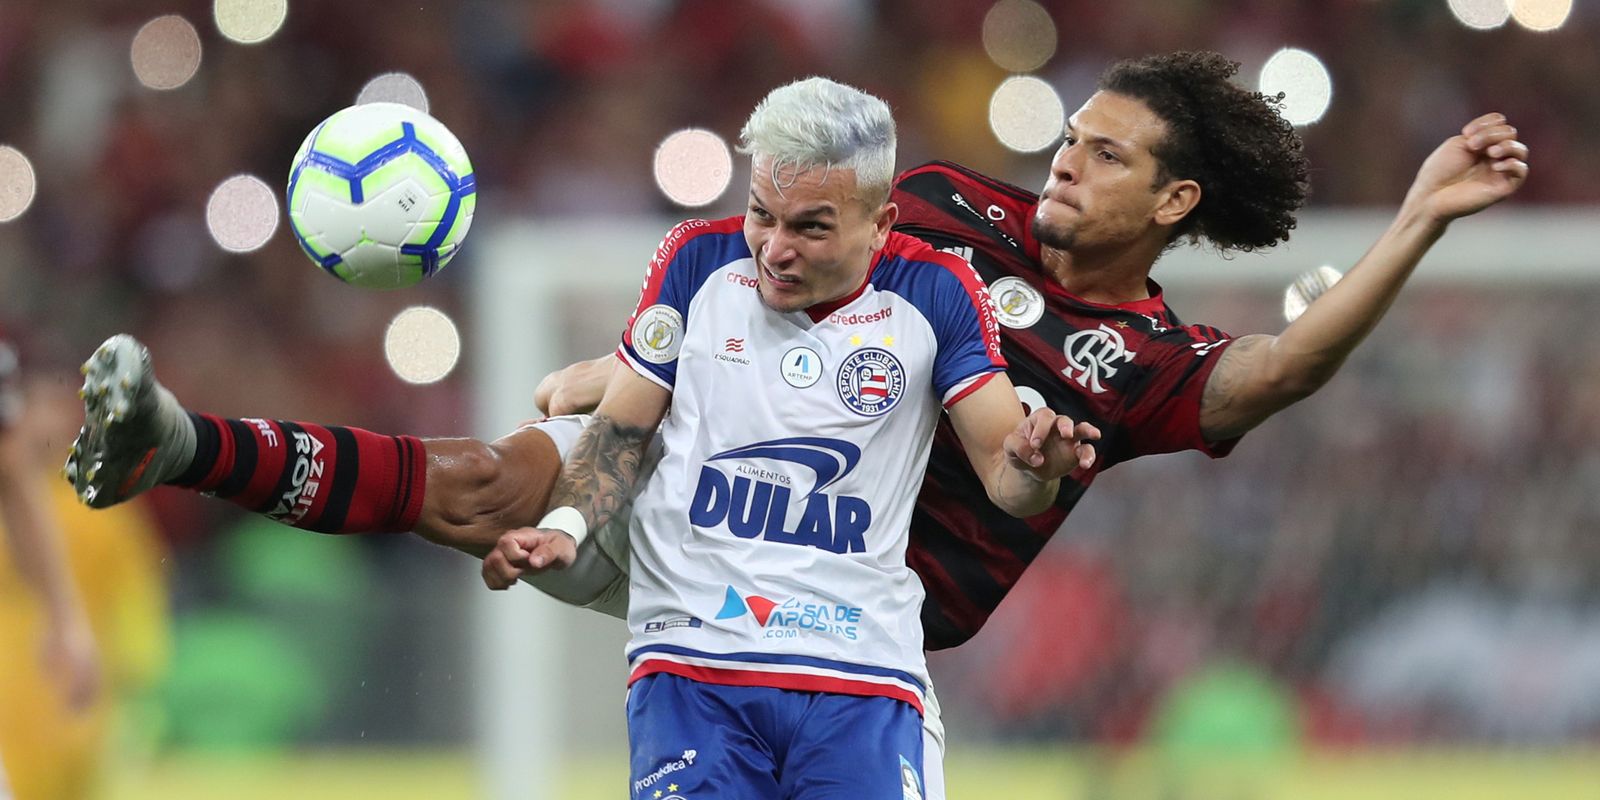 AO VIVO: assista a Fortaleza x Flamengo com o Coluna do Fla - Coluna do Fla